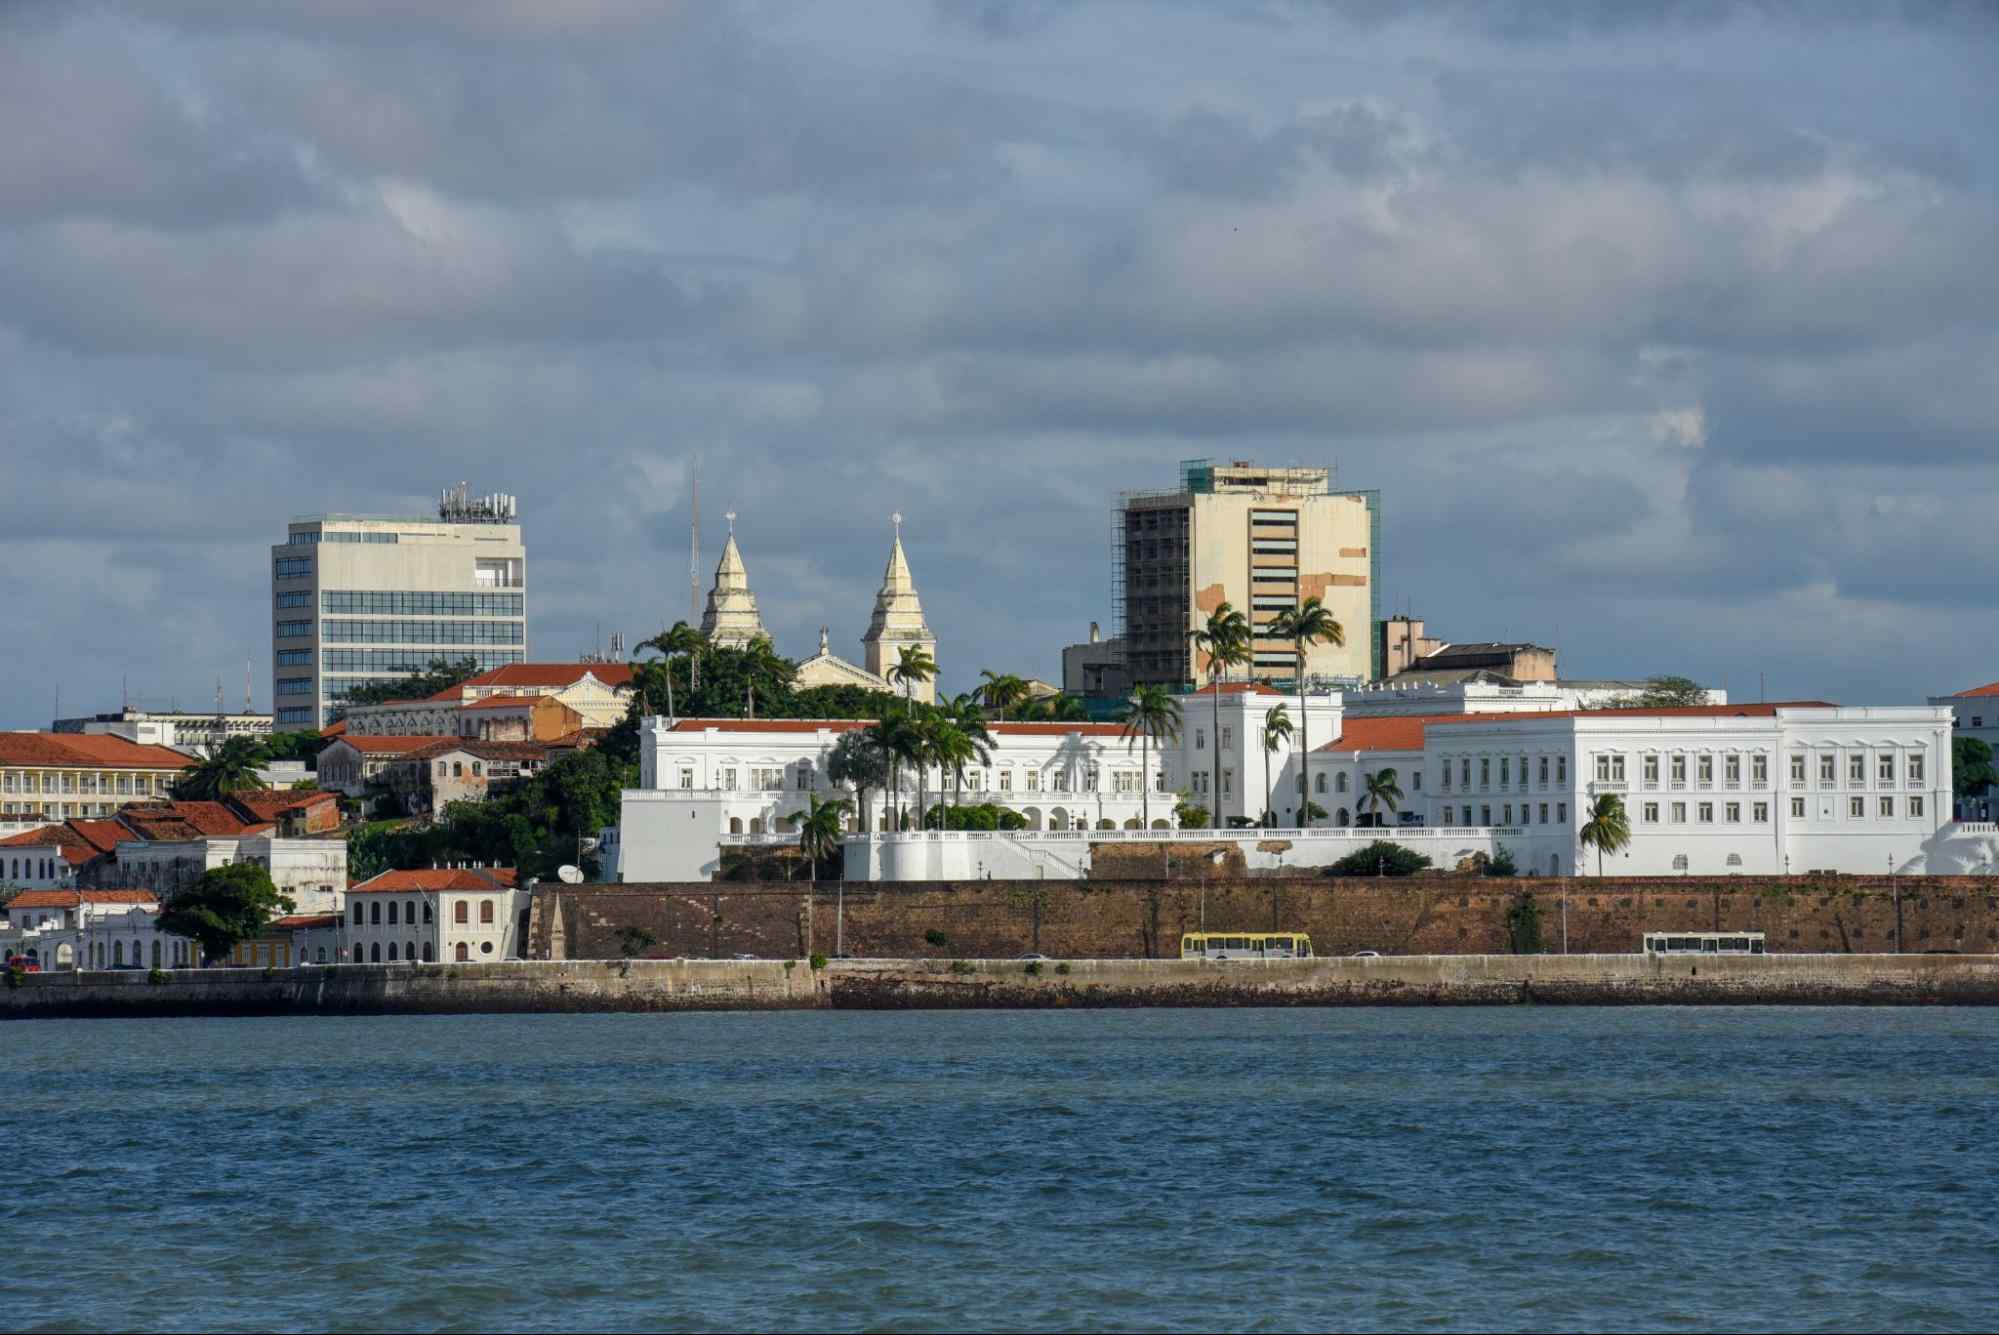 Vista da costa de São Luís, MA. É possível ver uma parte do mar e, depois dele, as construções coloniais do Centro Histórico